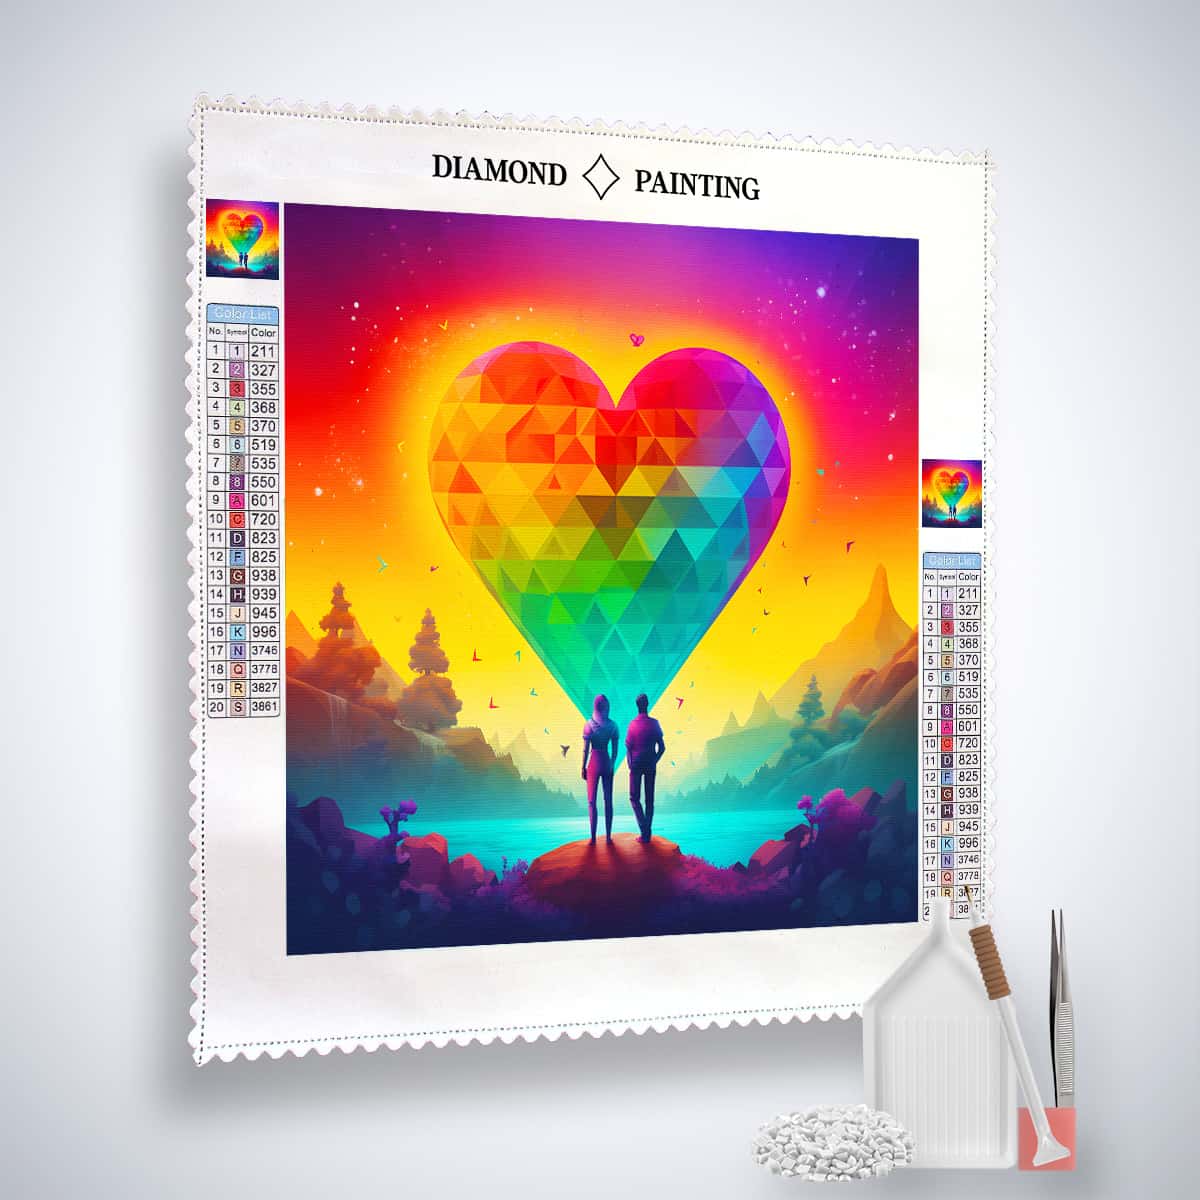 AB Diamond Painting - Paar unter Diamantherz - gedruckt in Ultra-HD - AB Diamond, Herz, Liebe, Menschen, Neu eingetroffen, Quadratisch